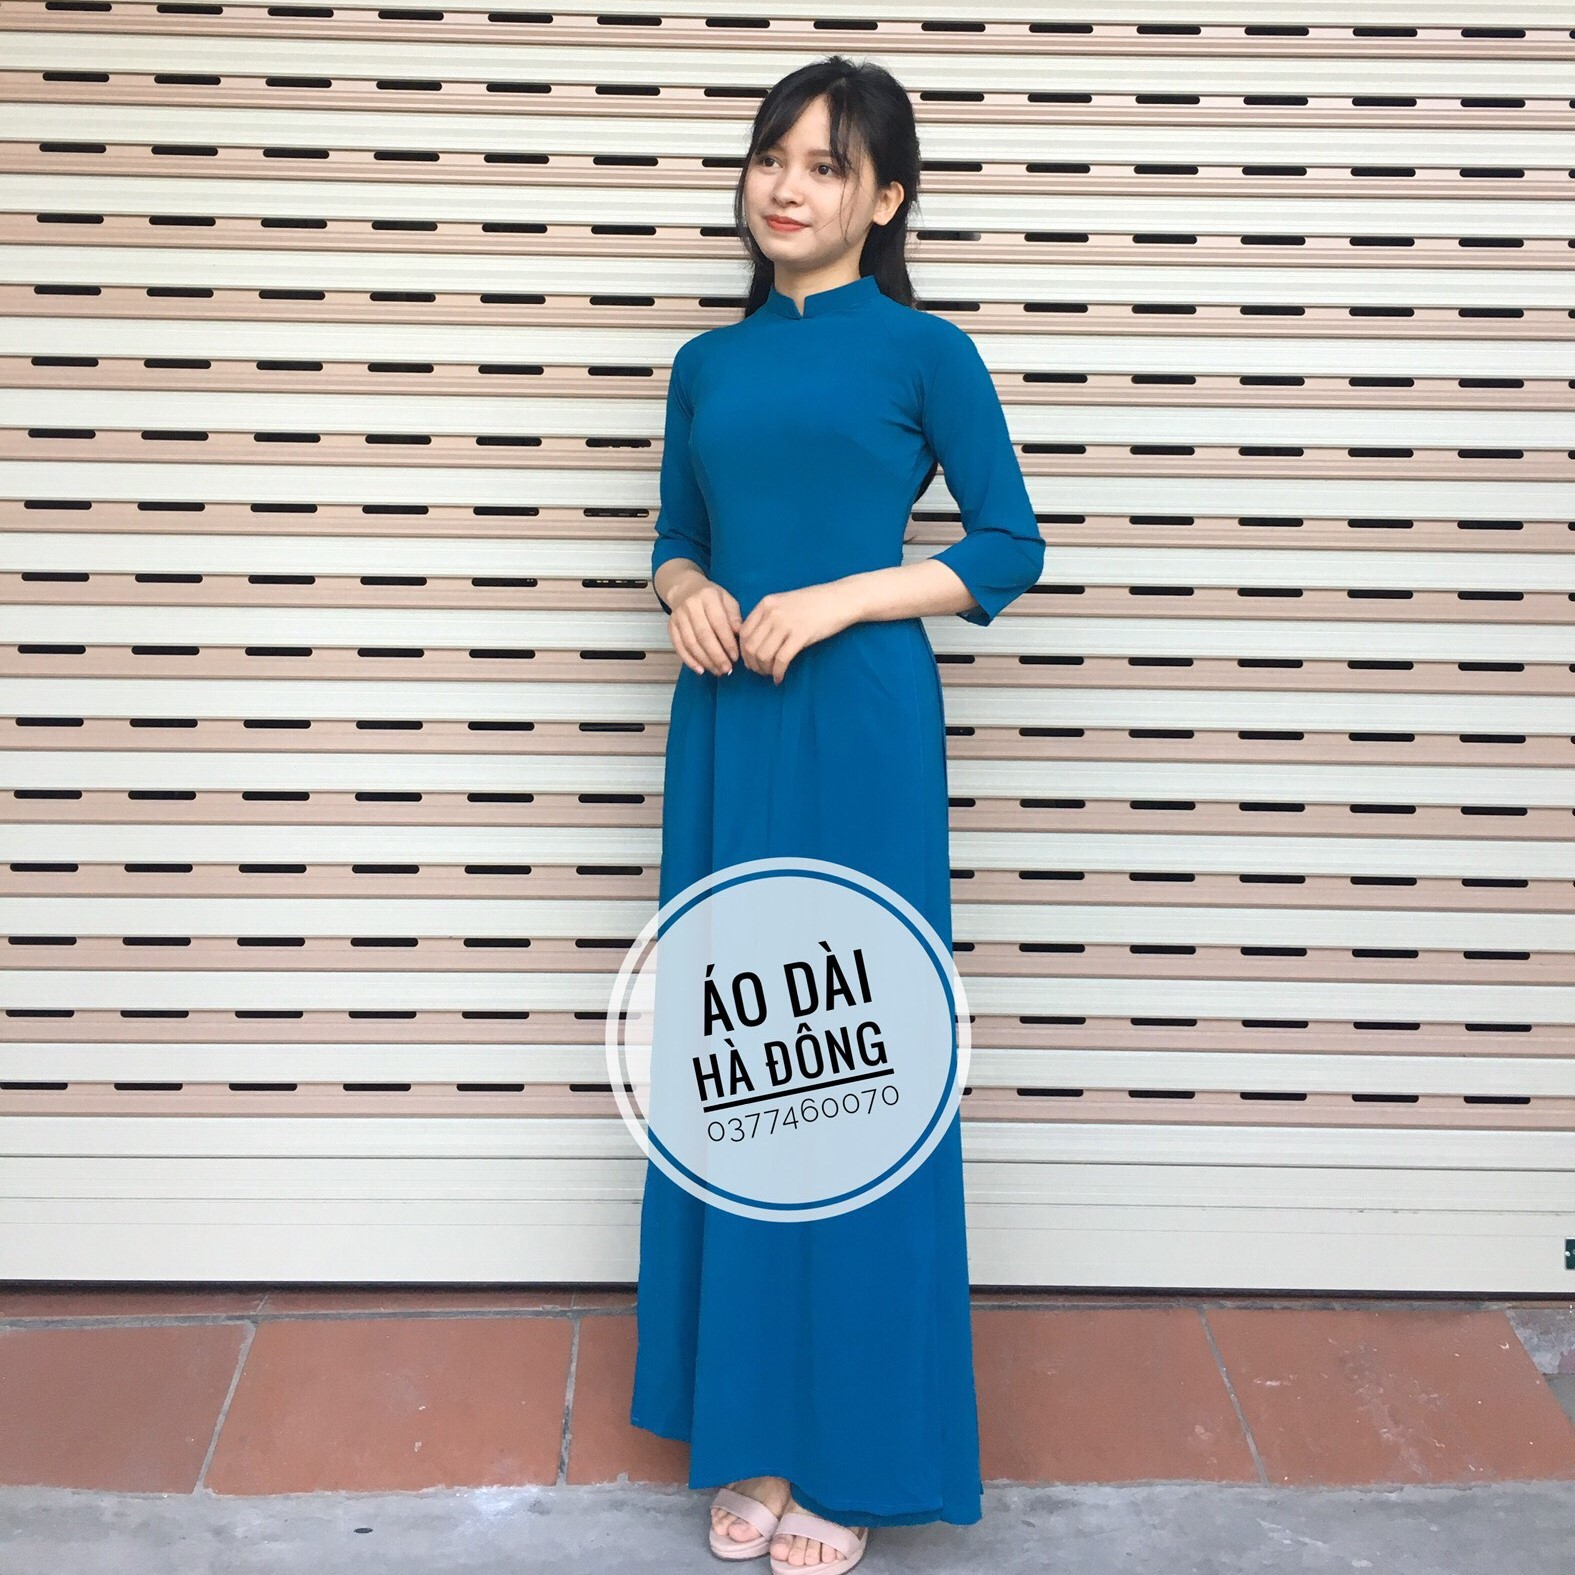 Màu xanh cổ vịt lên ngôi thời trang ThuĐông 2012  Thời trang  Vietnam  VietnamPlus